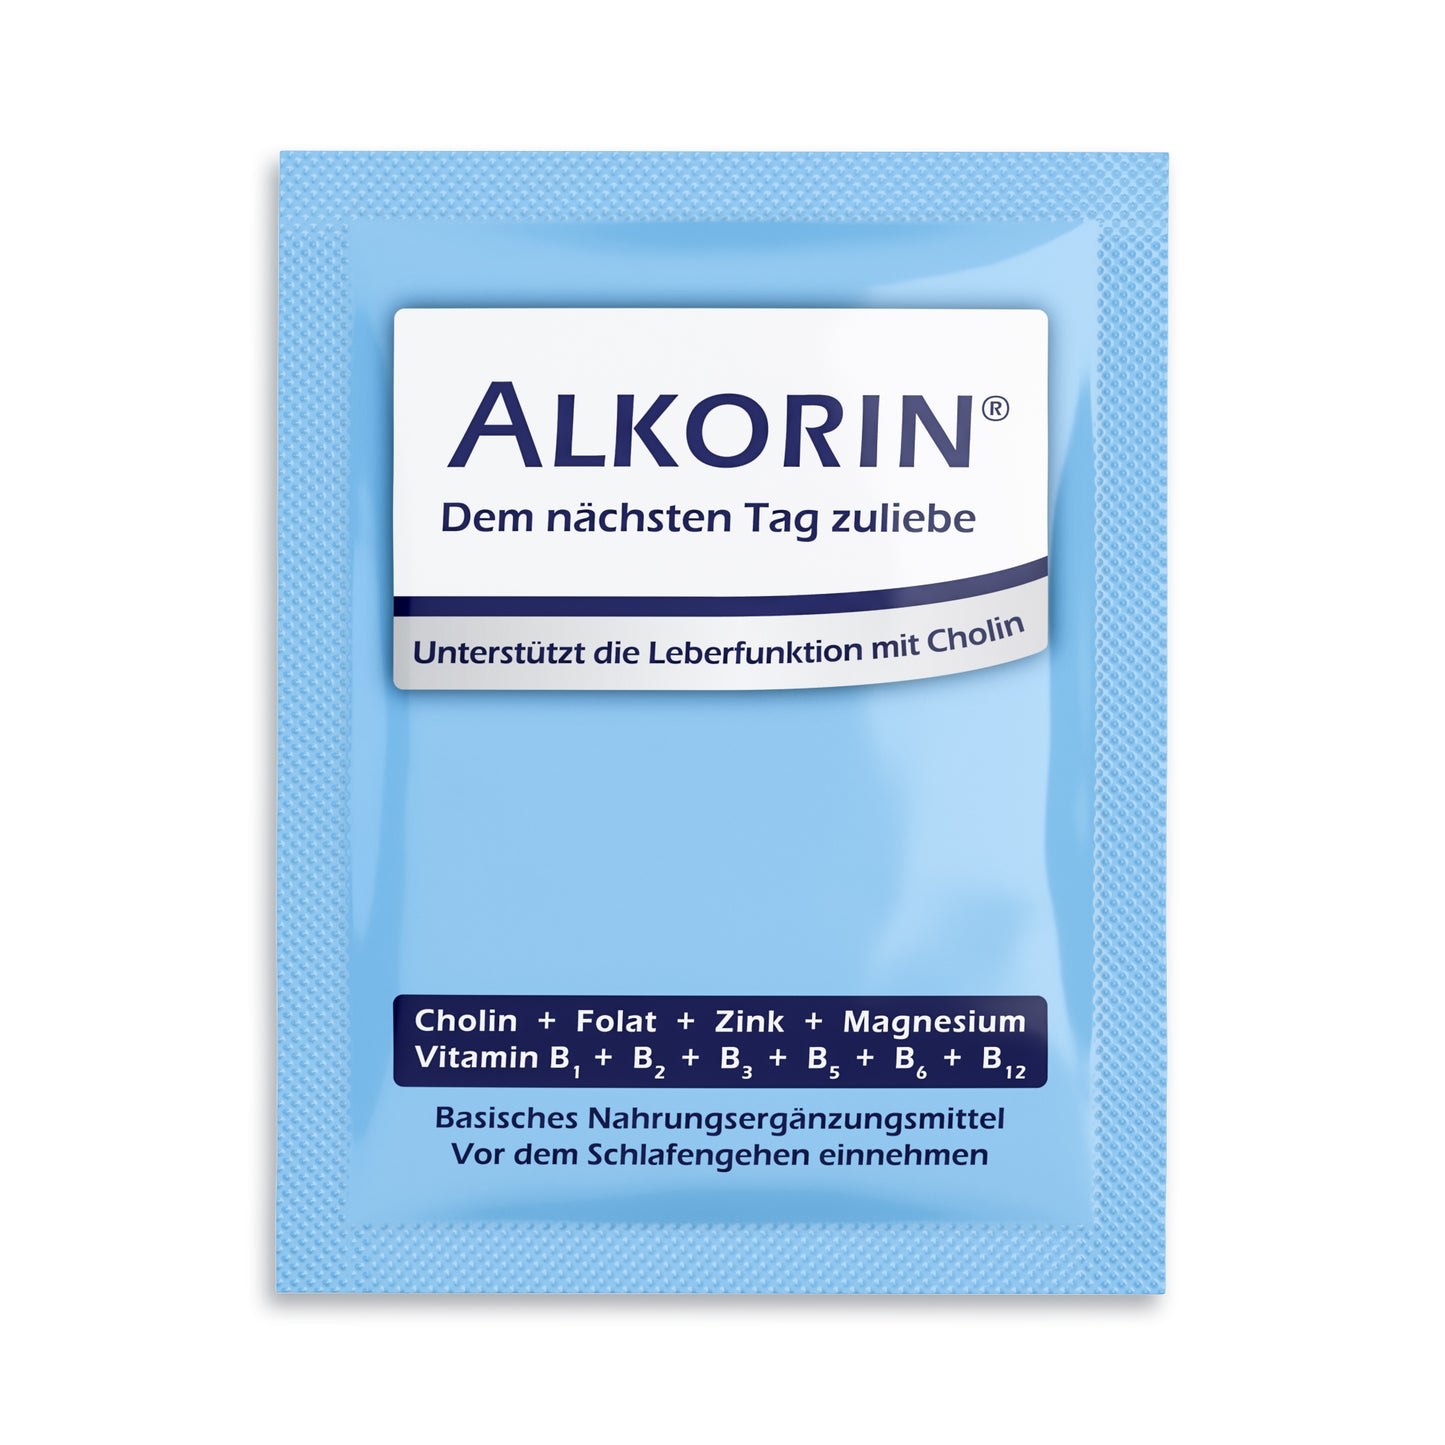 ALKORIN® 40 Sachets - Das bewährte Original. Dem nächsten Tag zuliebe. Unterstützt die Leberfunktion mit Cholin.